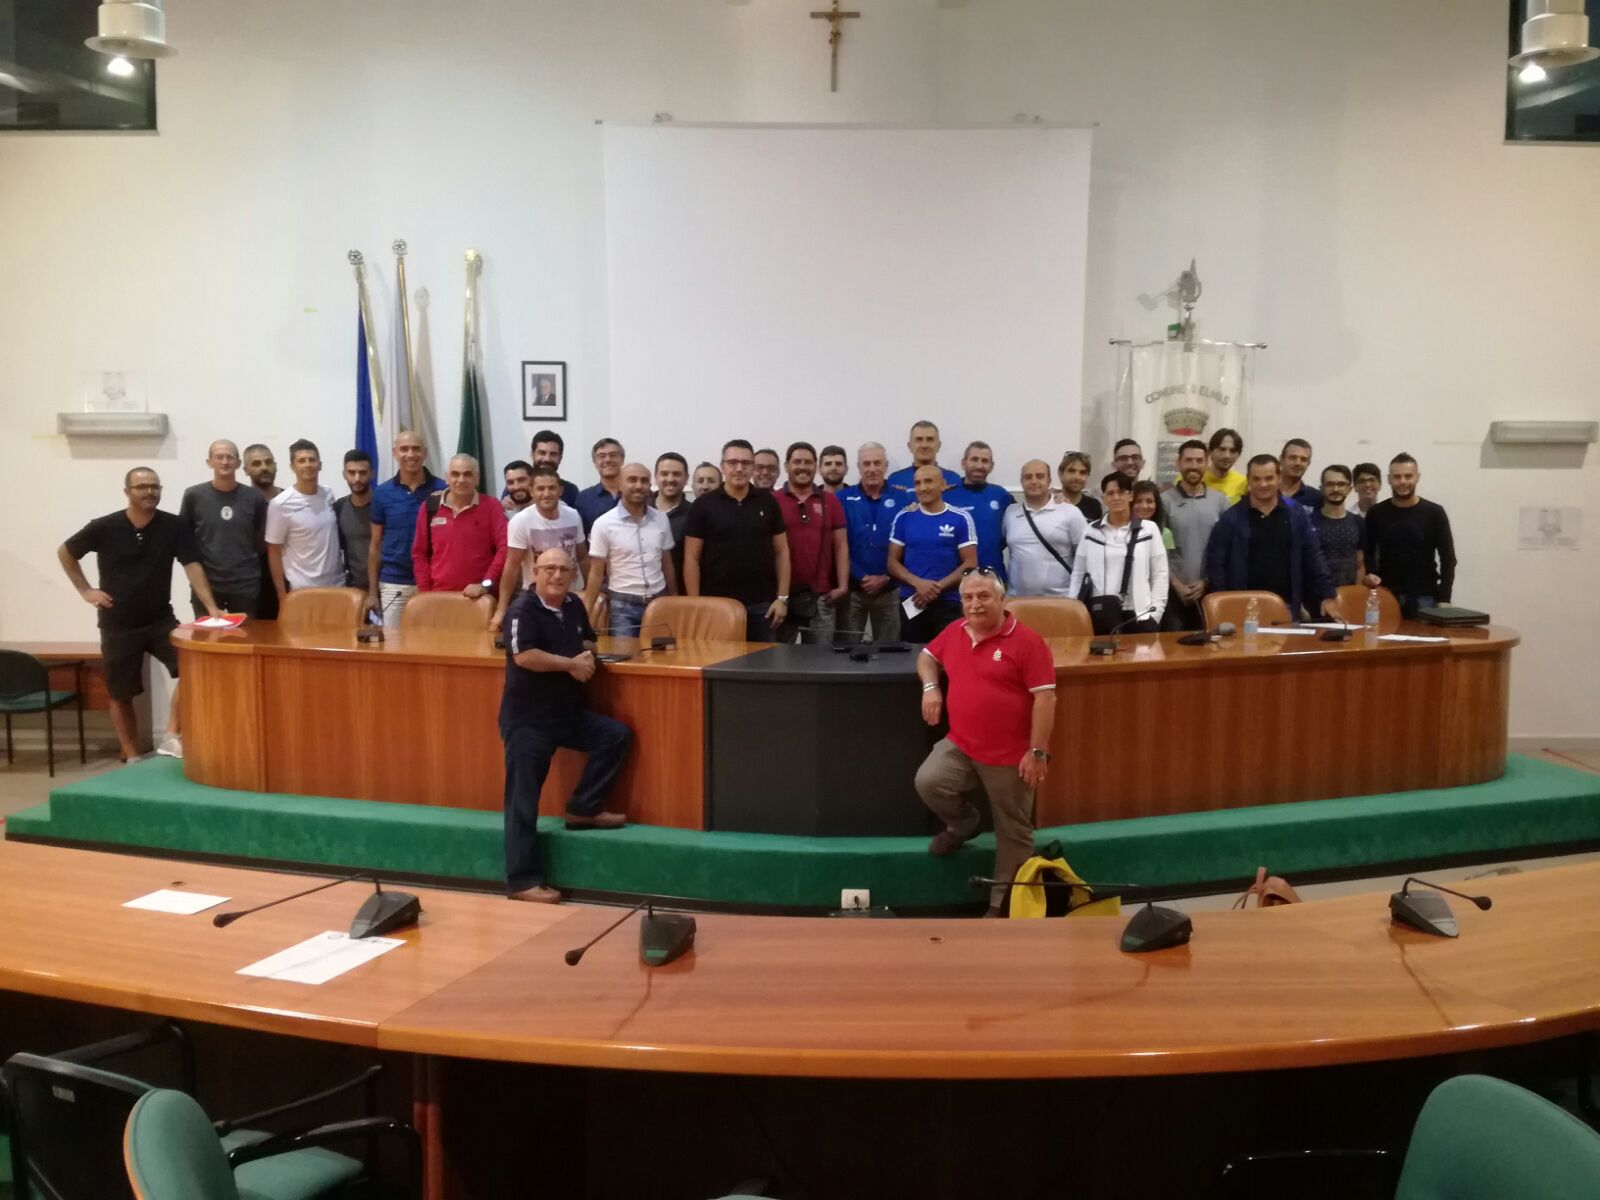 Futsal Lab, si conclude con un grande successo l’incontro di domenica in Sardegna